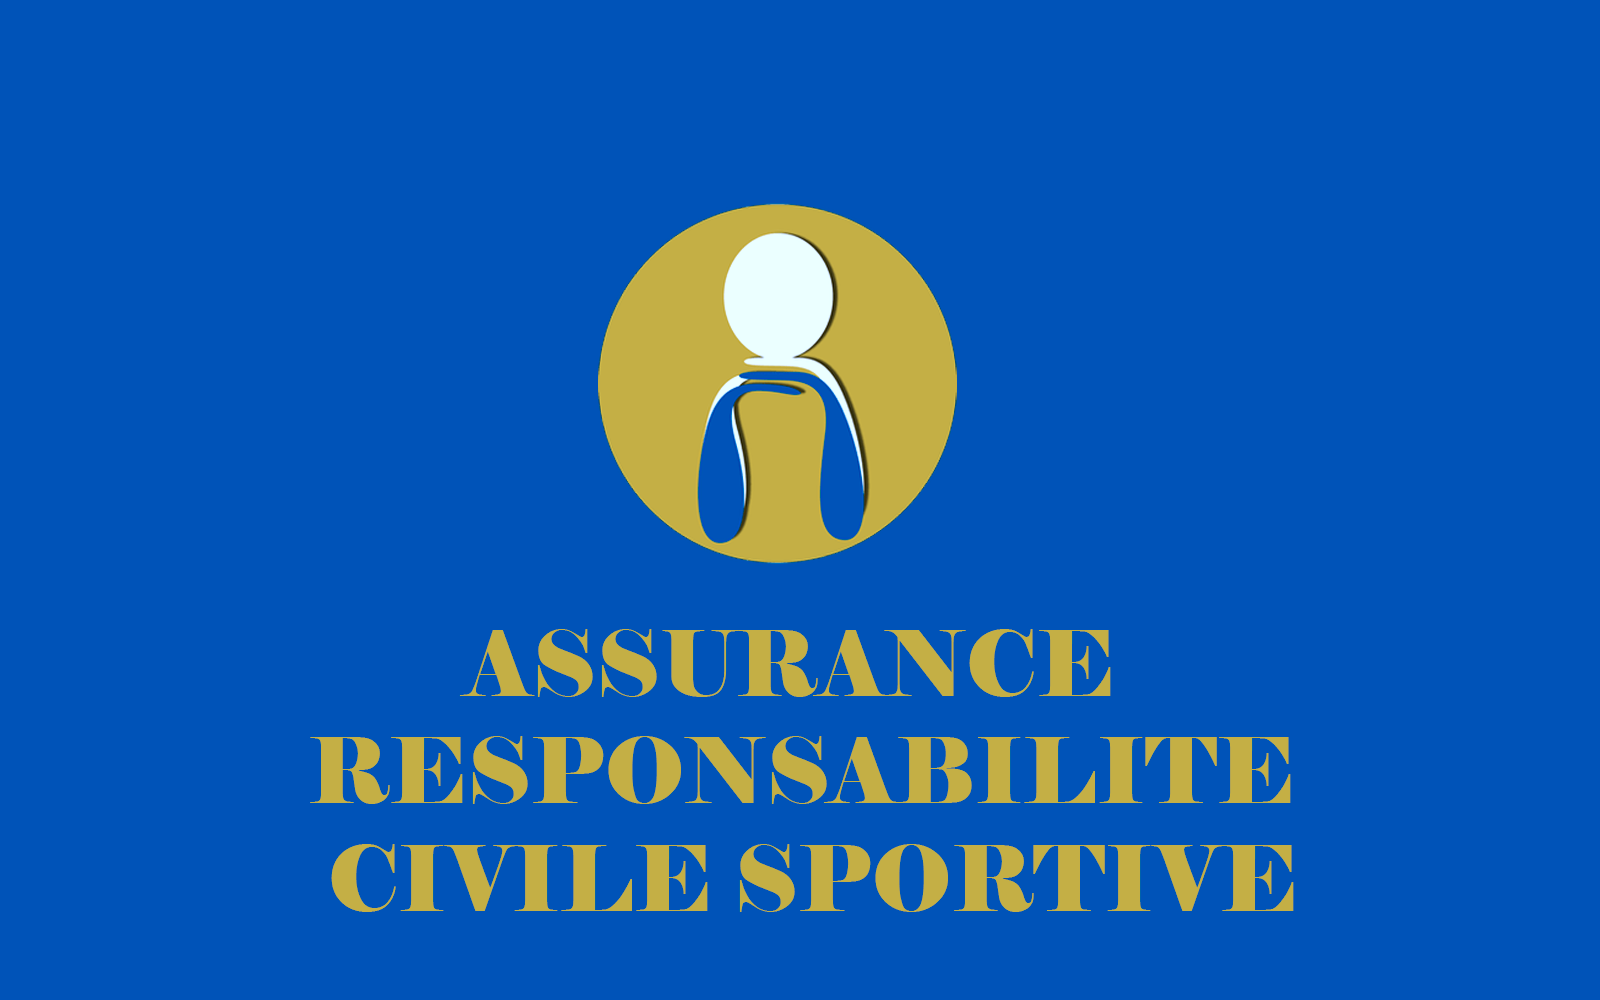 Responsabilité civile sportive